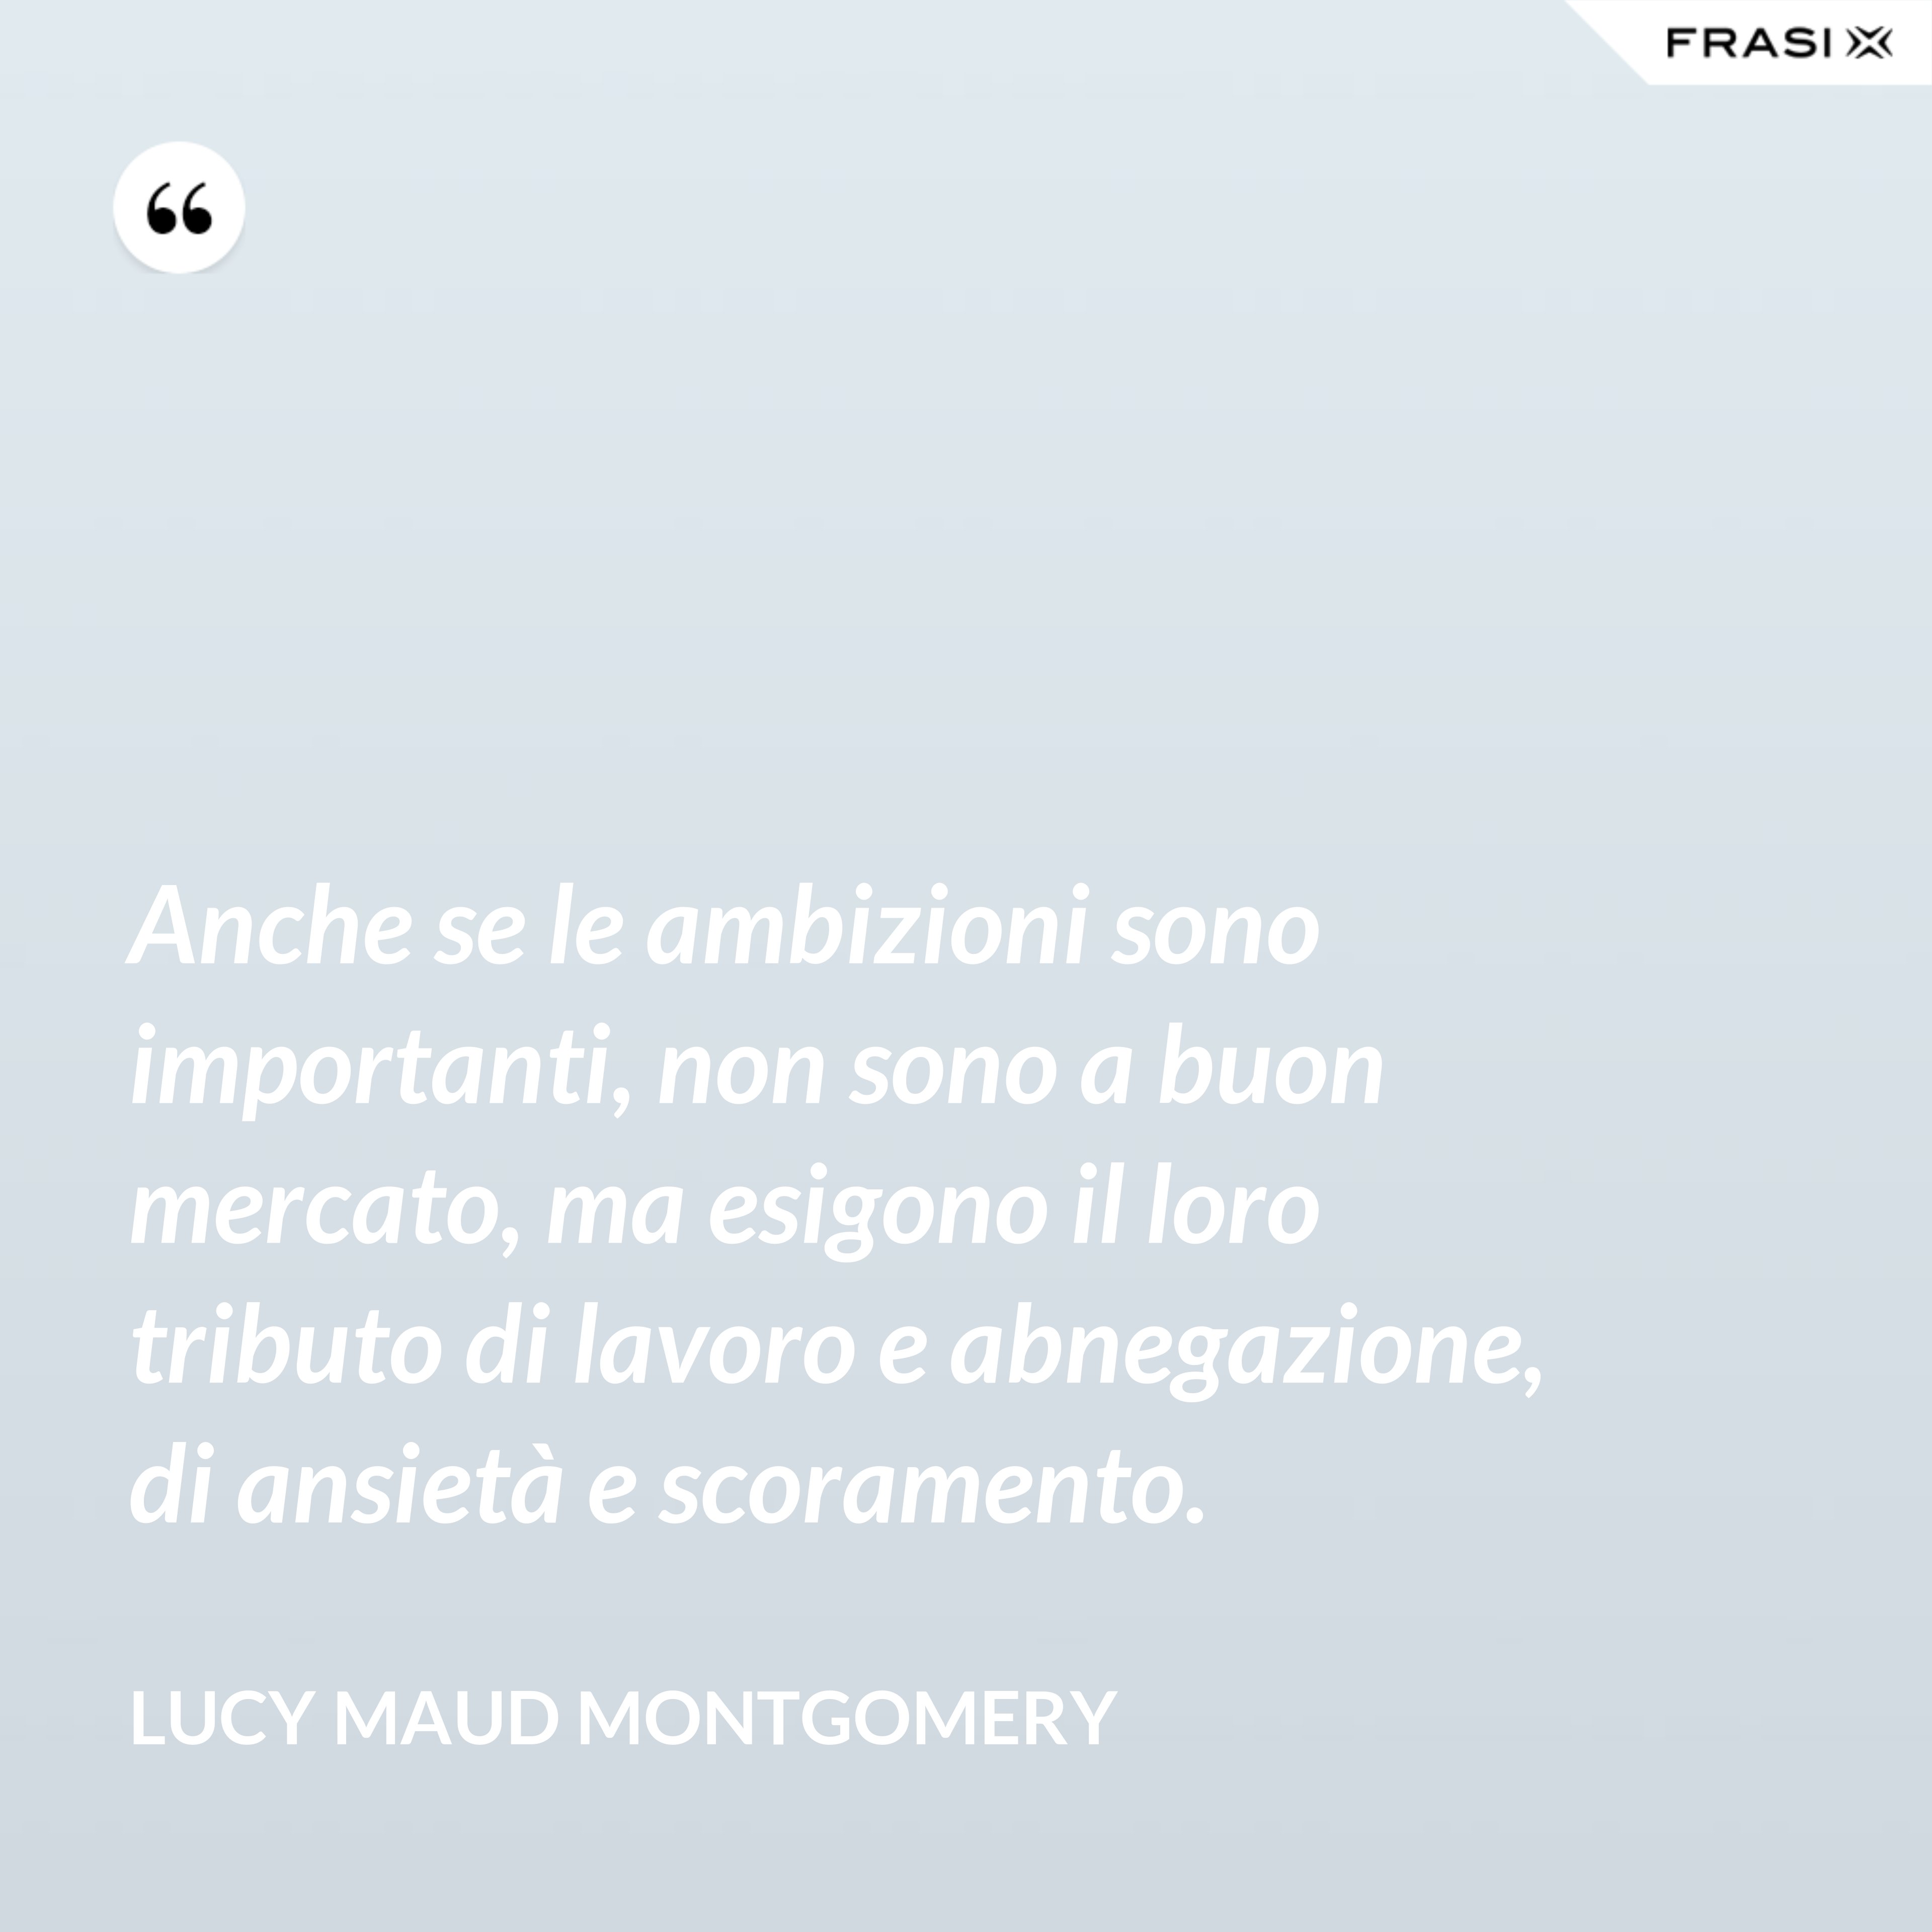 Anche se le ambizioni sono importanti, non sono a buon mercato, ma esigono il loro tributo di lavoro e abnegazione, di ansietà e scoramento. - Lucy Maud Montgomery